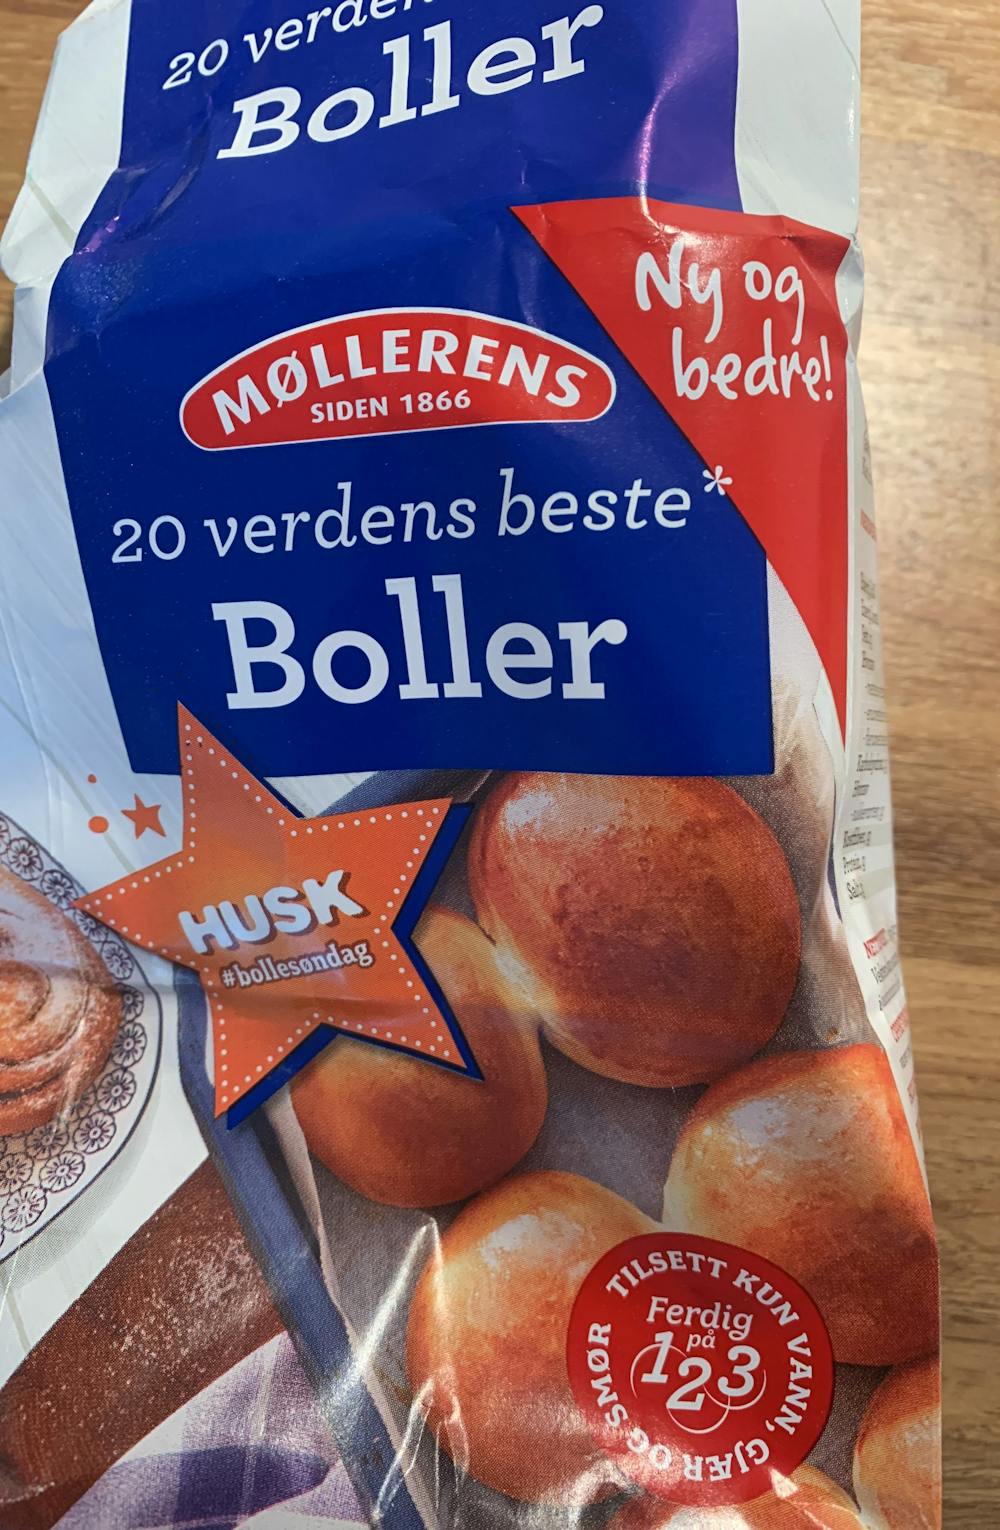 Boller, Møllerens